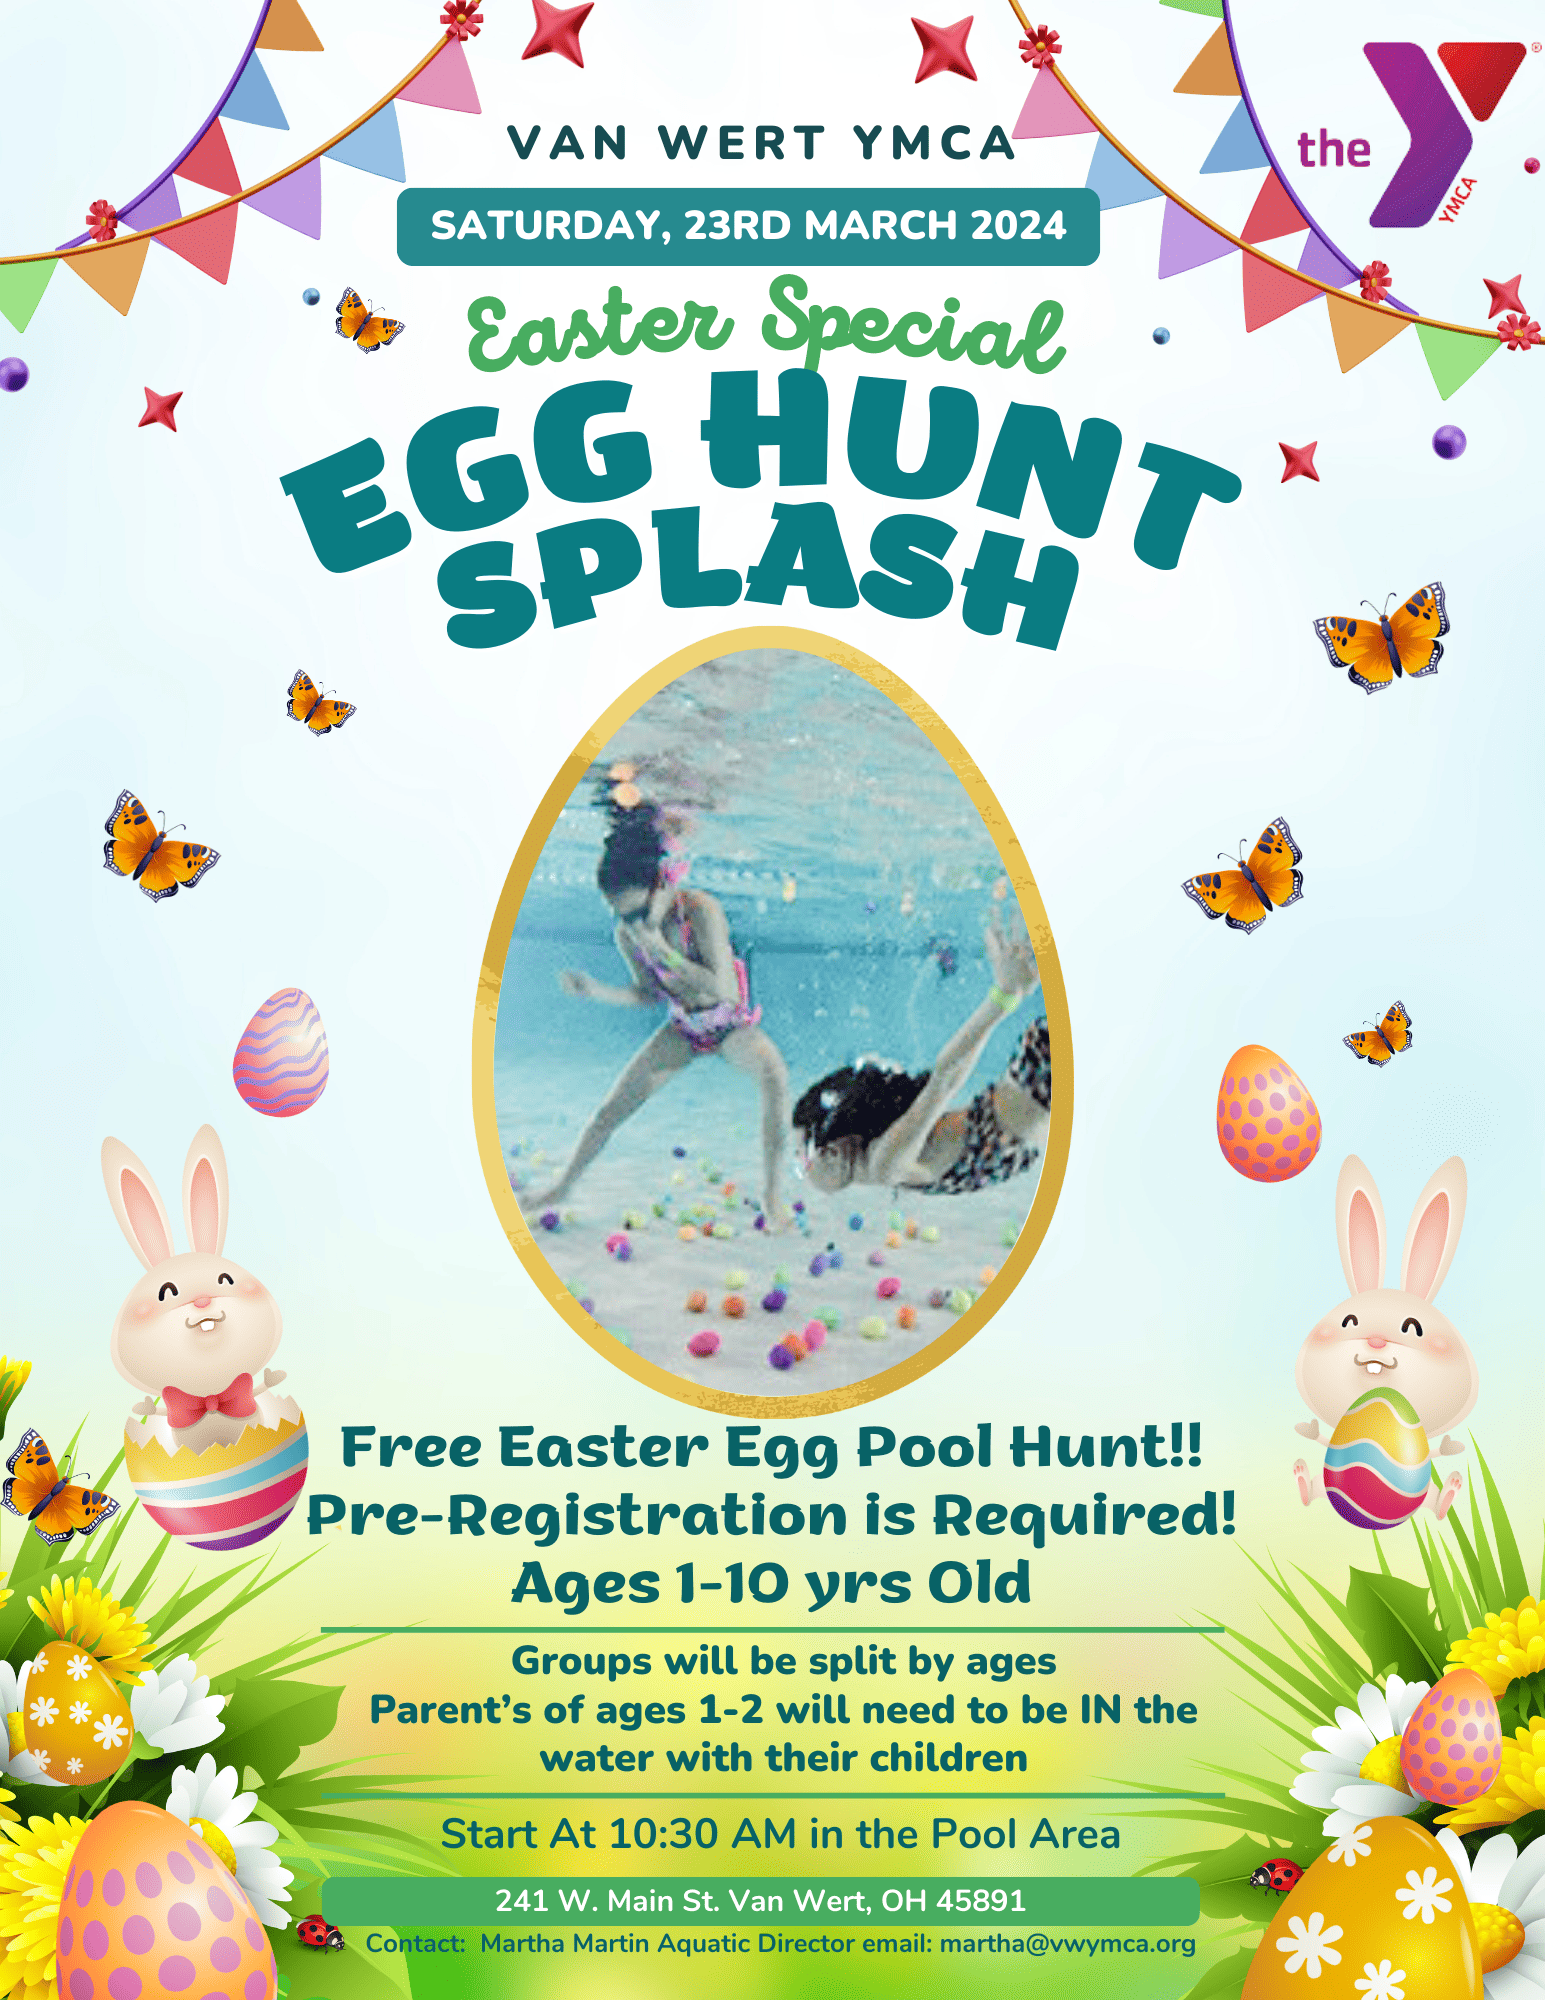 Van Wert YMCA Easter Special Egg Hunt Splash